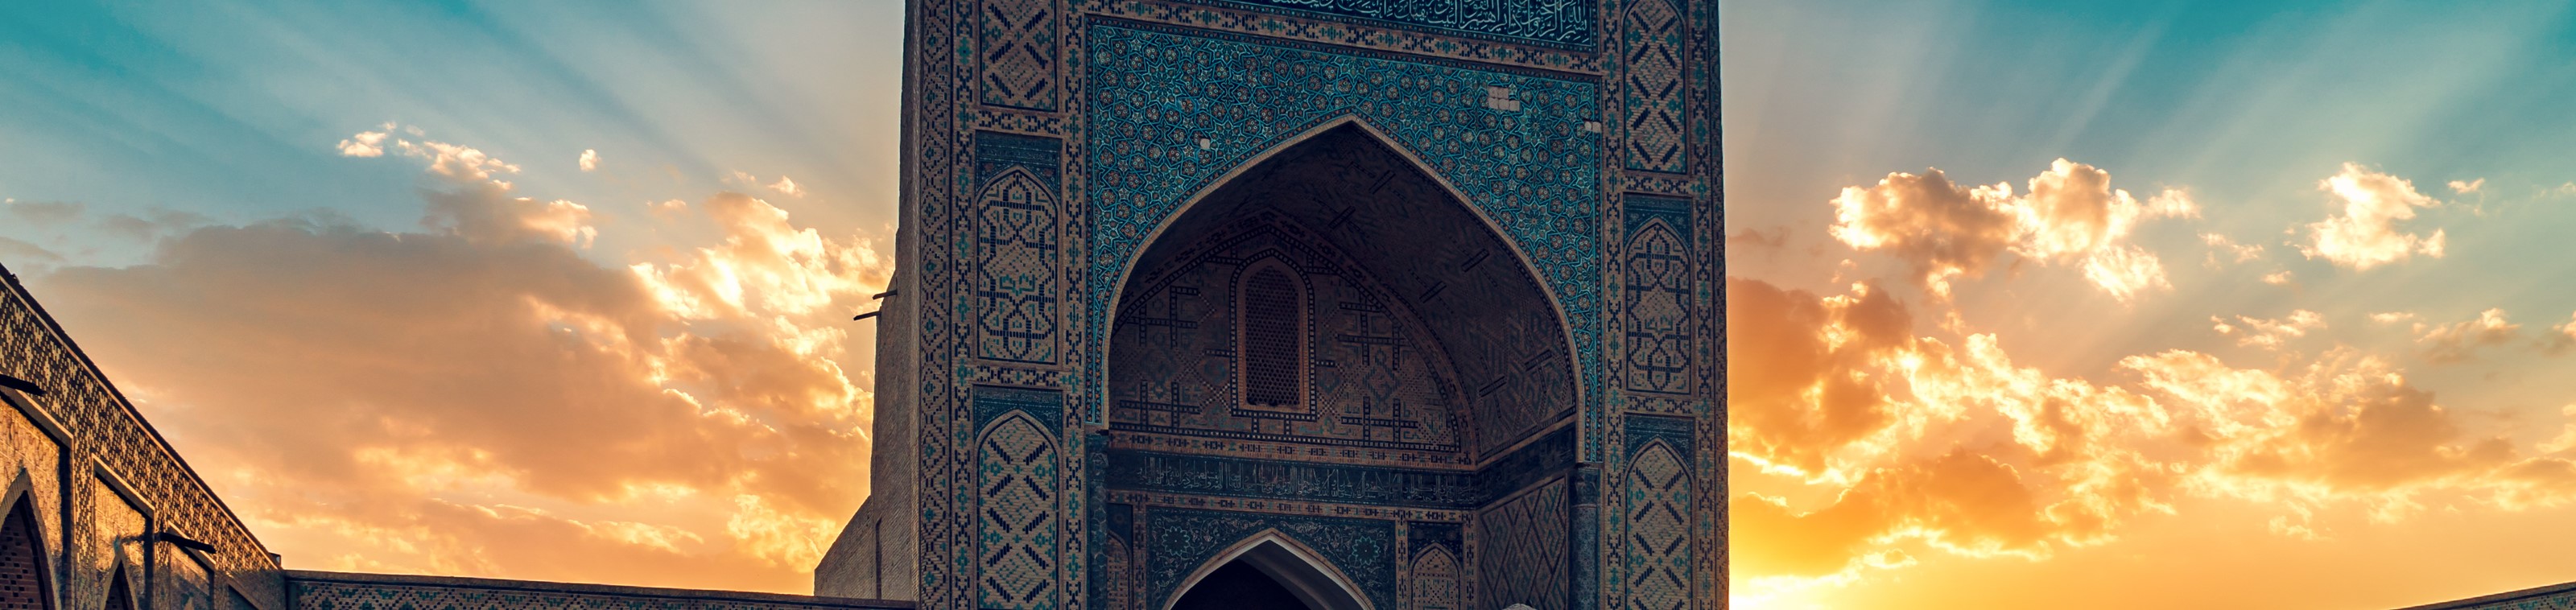 12-daagse rondreis Oezbekistan, het kruispunt van de Zijderoute